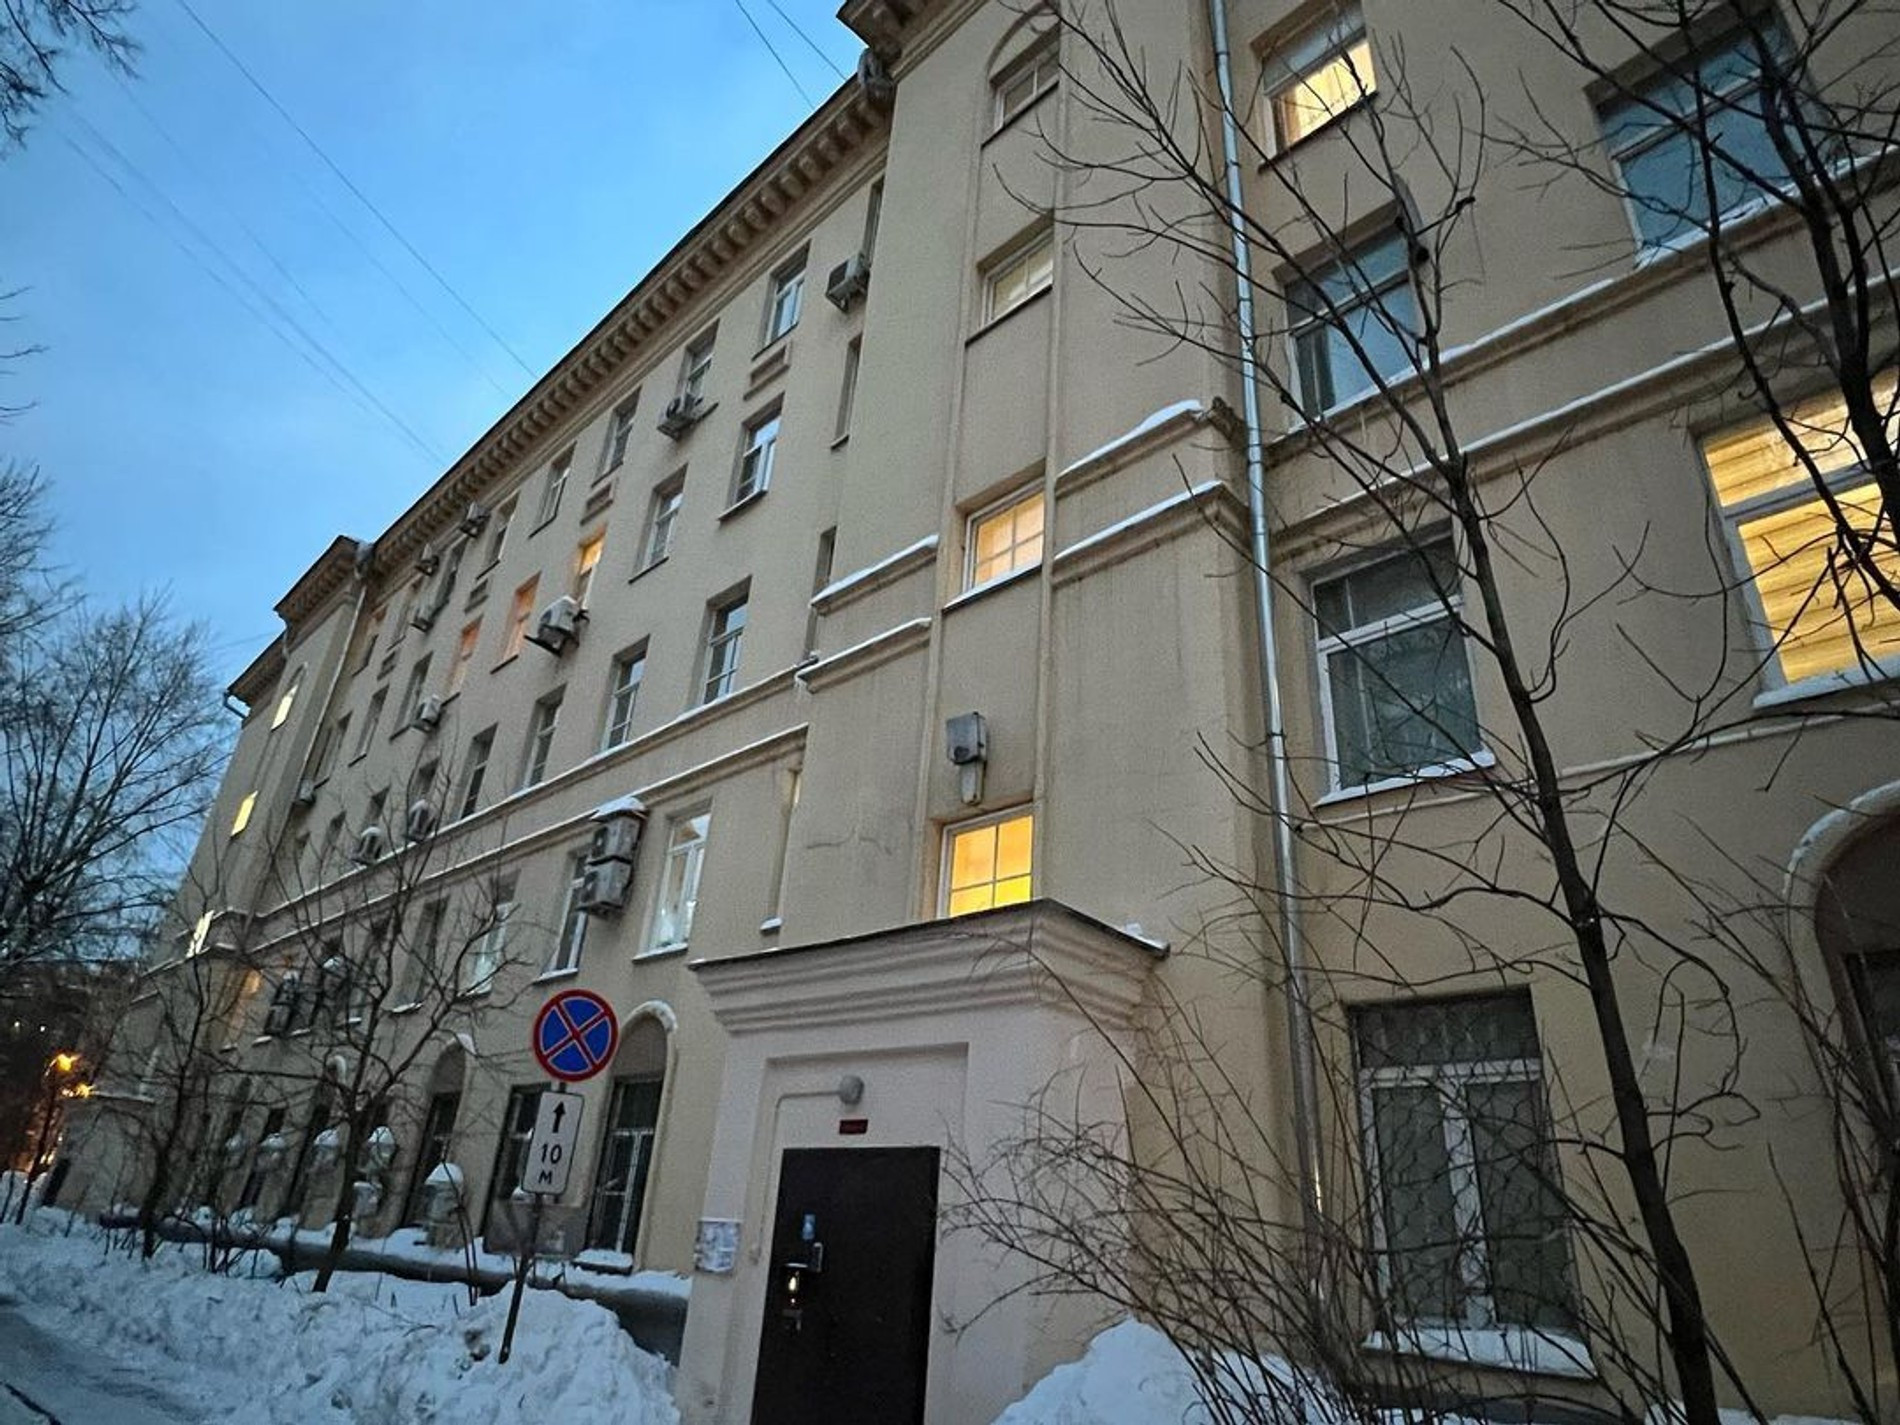 Квартира, которую Прохор Шаляпин выставил на продажу
Фото: Инстаграм (запрещен в РФ) / @shalyapin_official